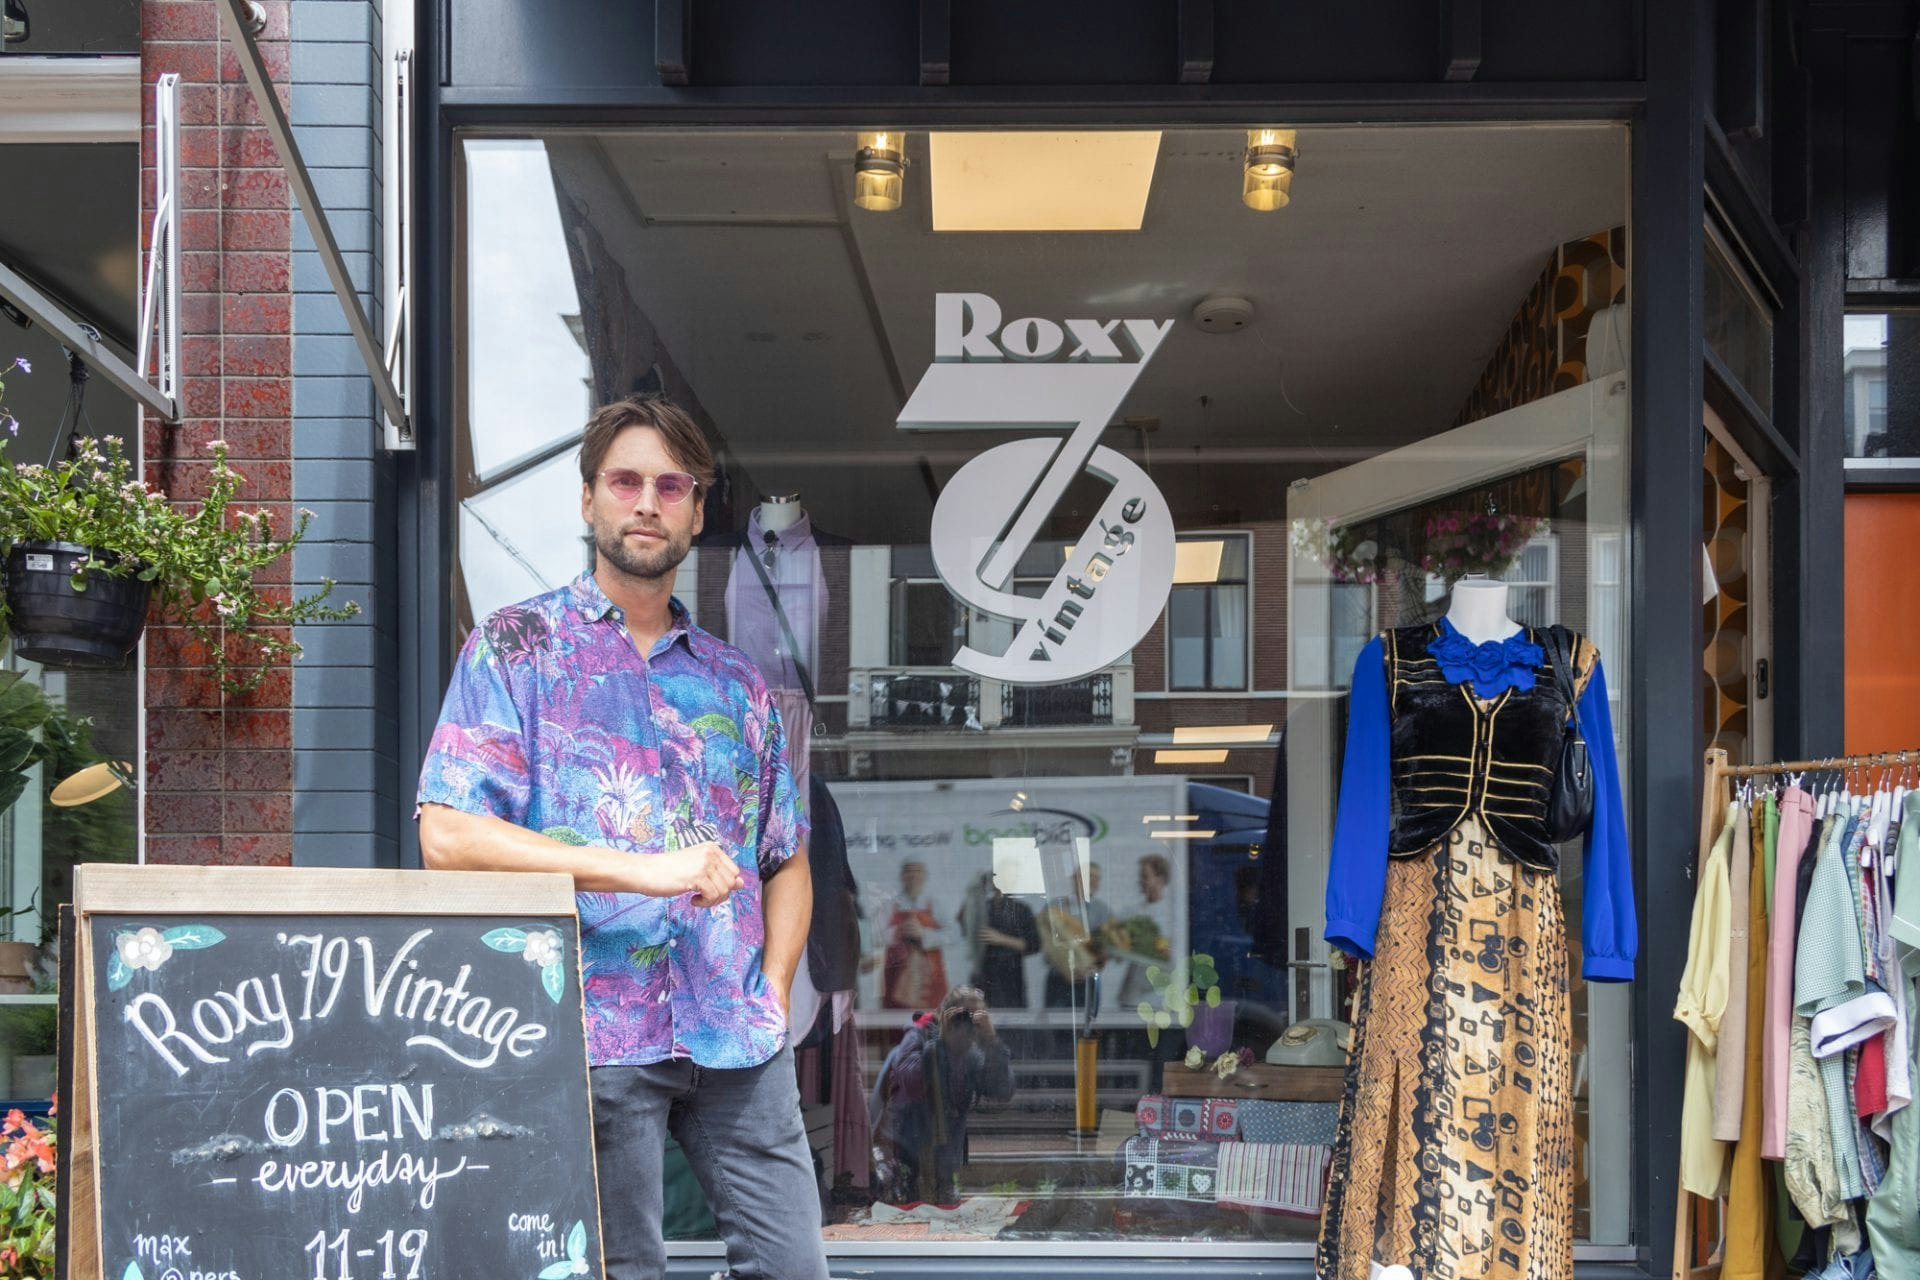 Durf Ecologie Wig Op bezoek bij: Vintage kledingwinkel Roxy '79 aan de Nachtegaalstraat in  Utrecht